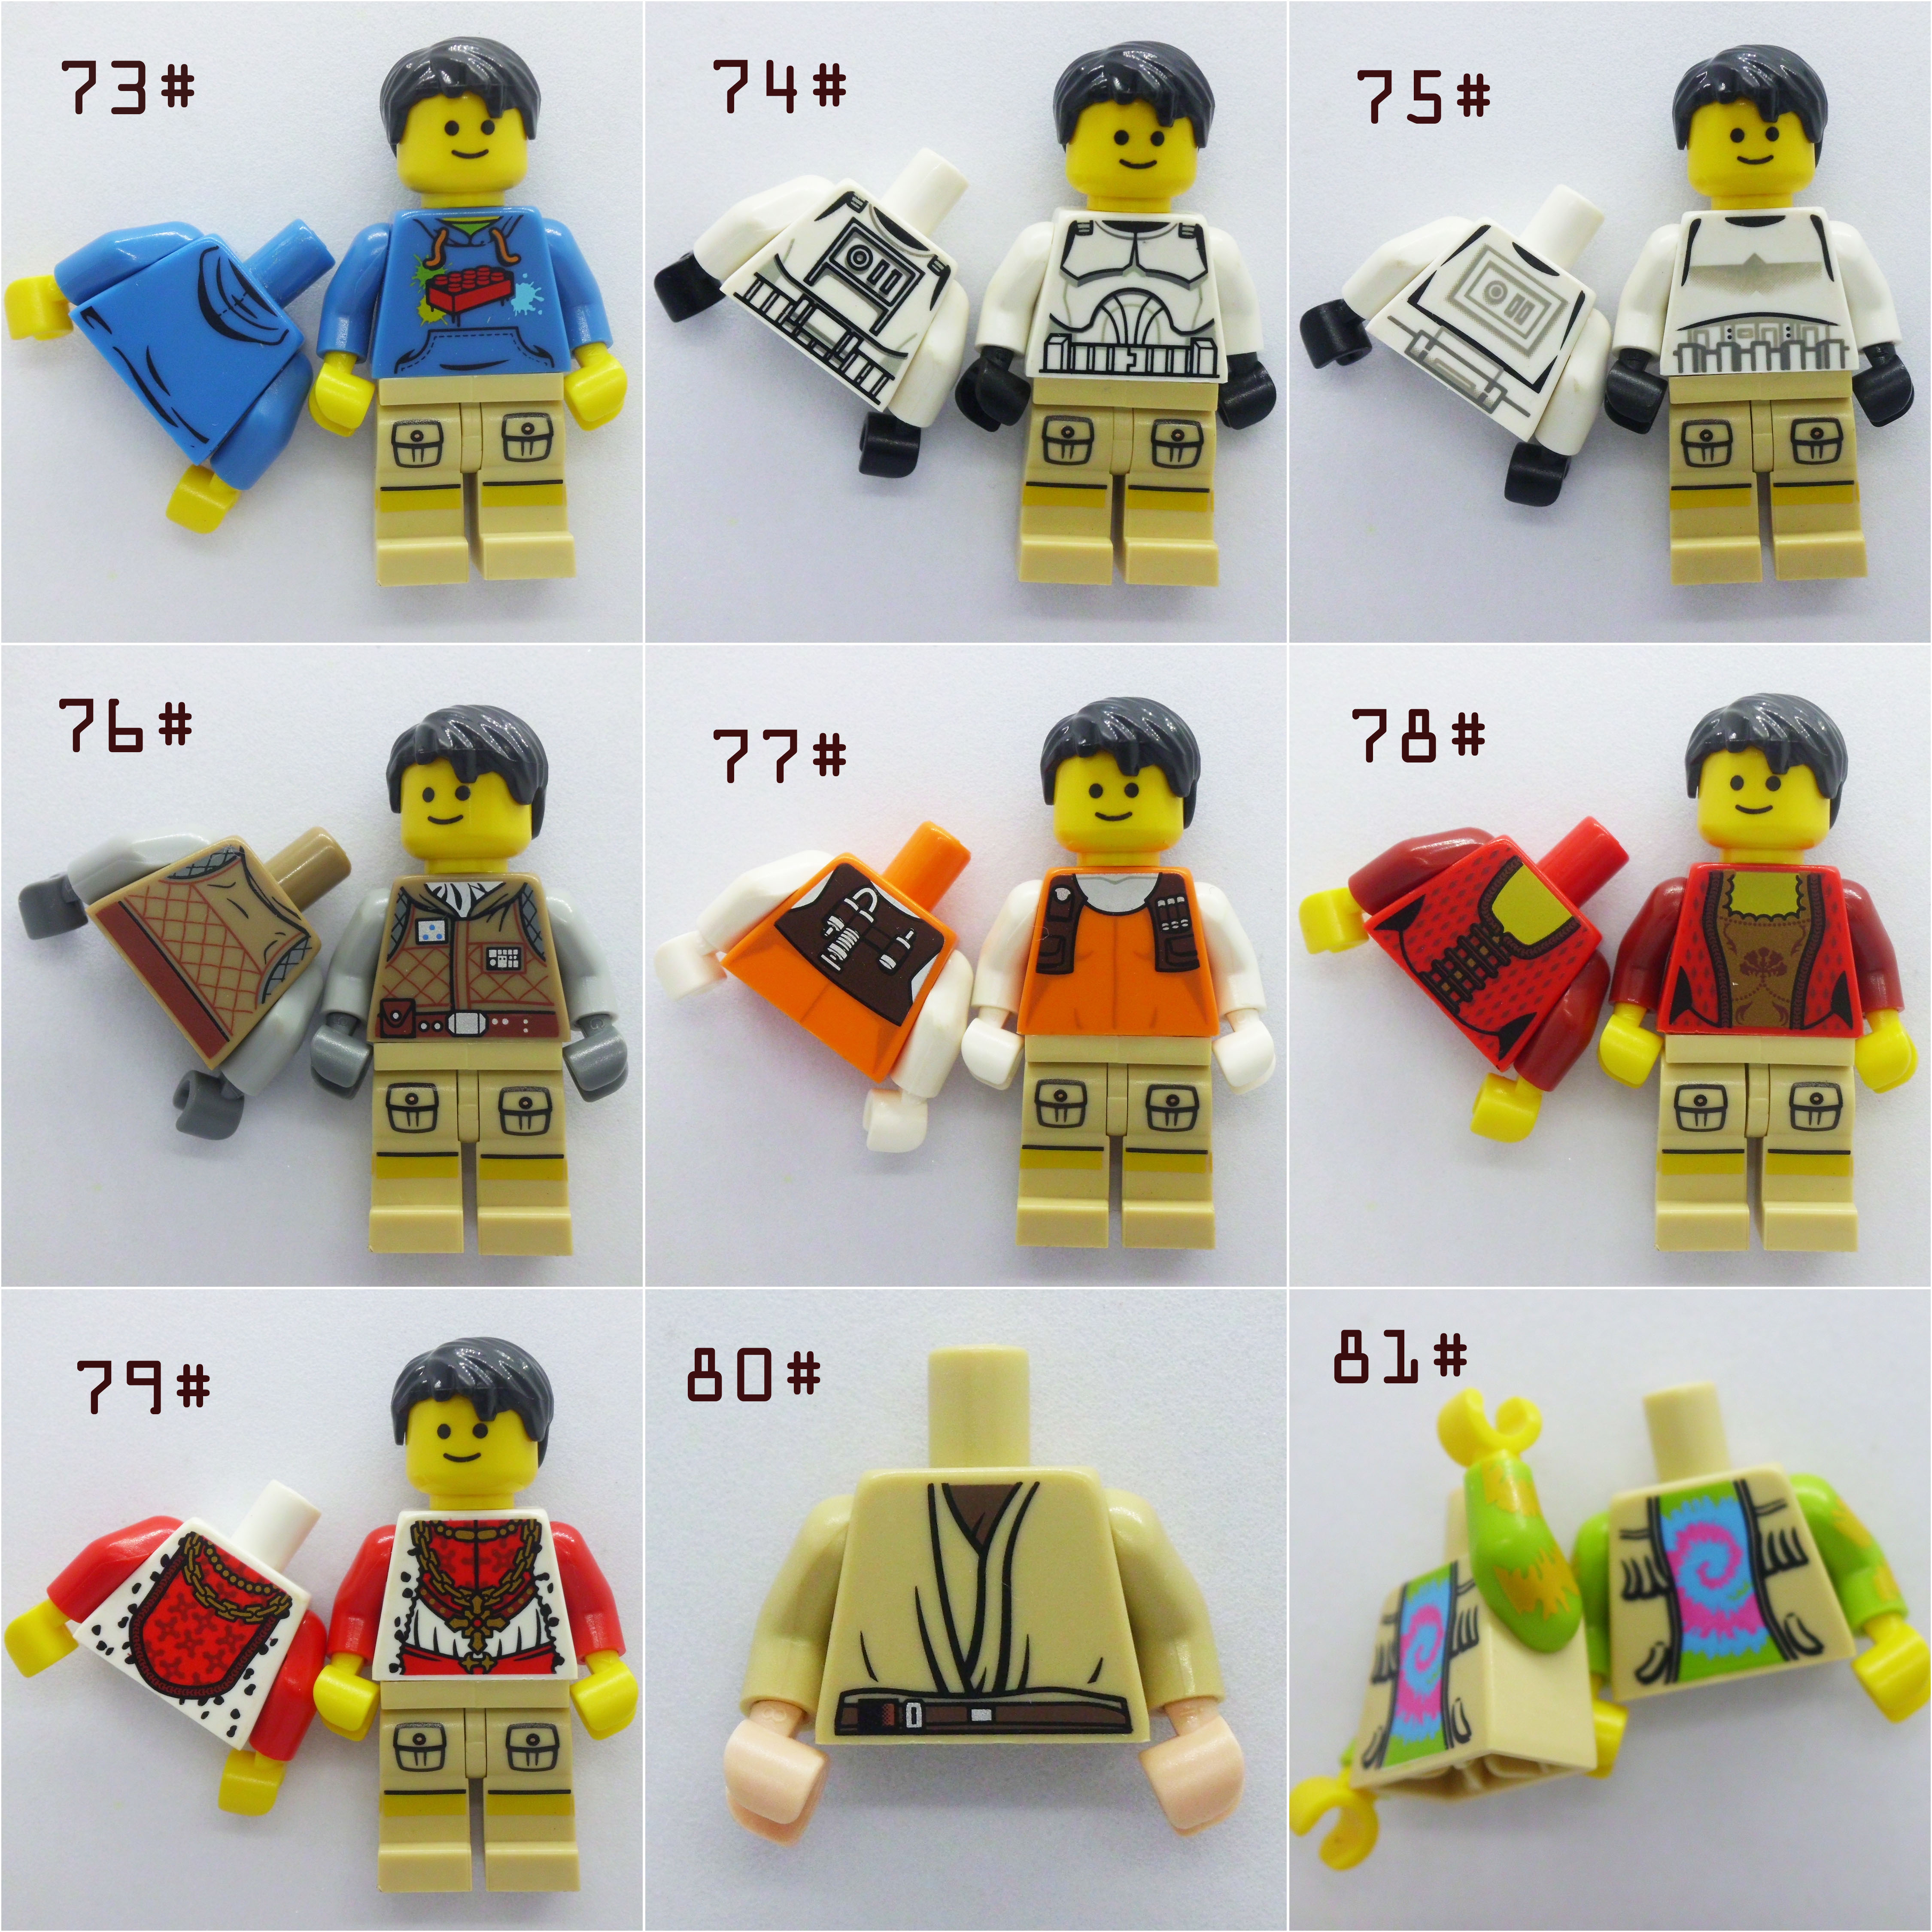 乐高 LEGO 散货 人仔身体 衣服 人仔配件